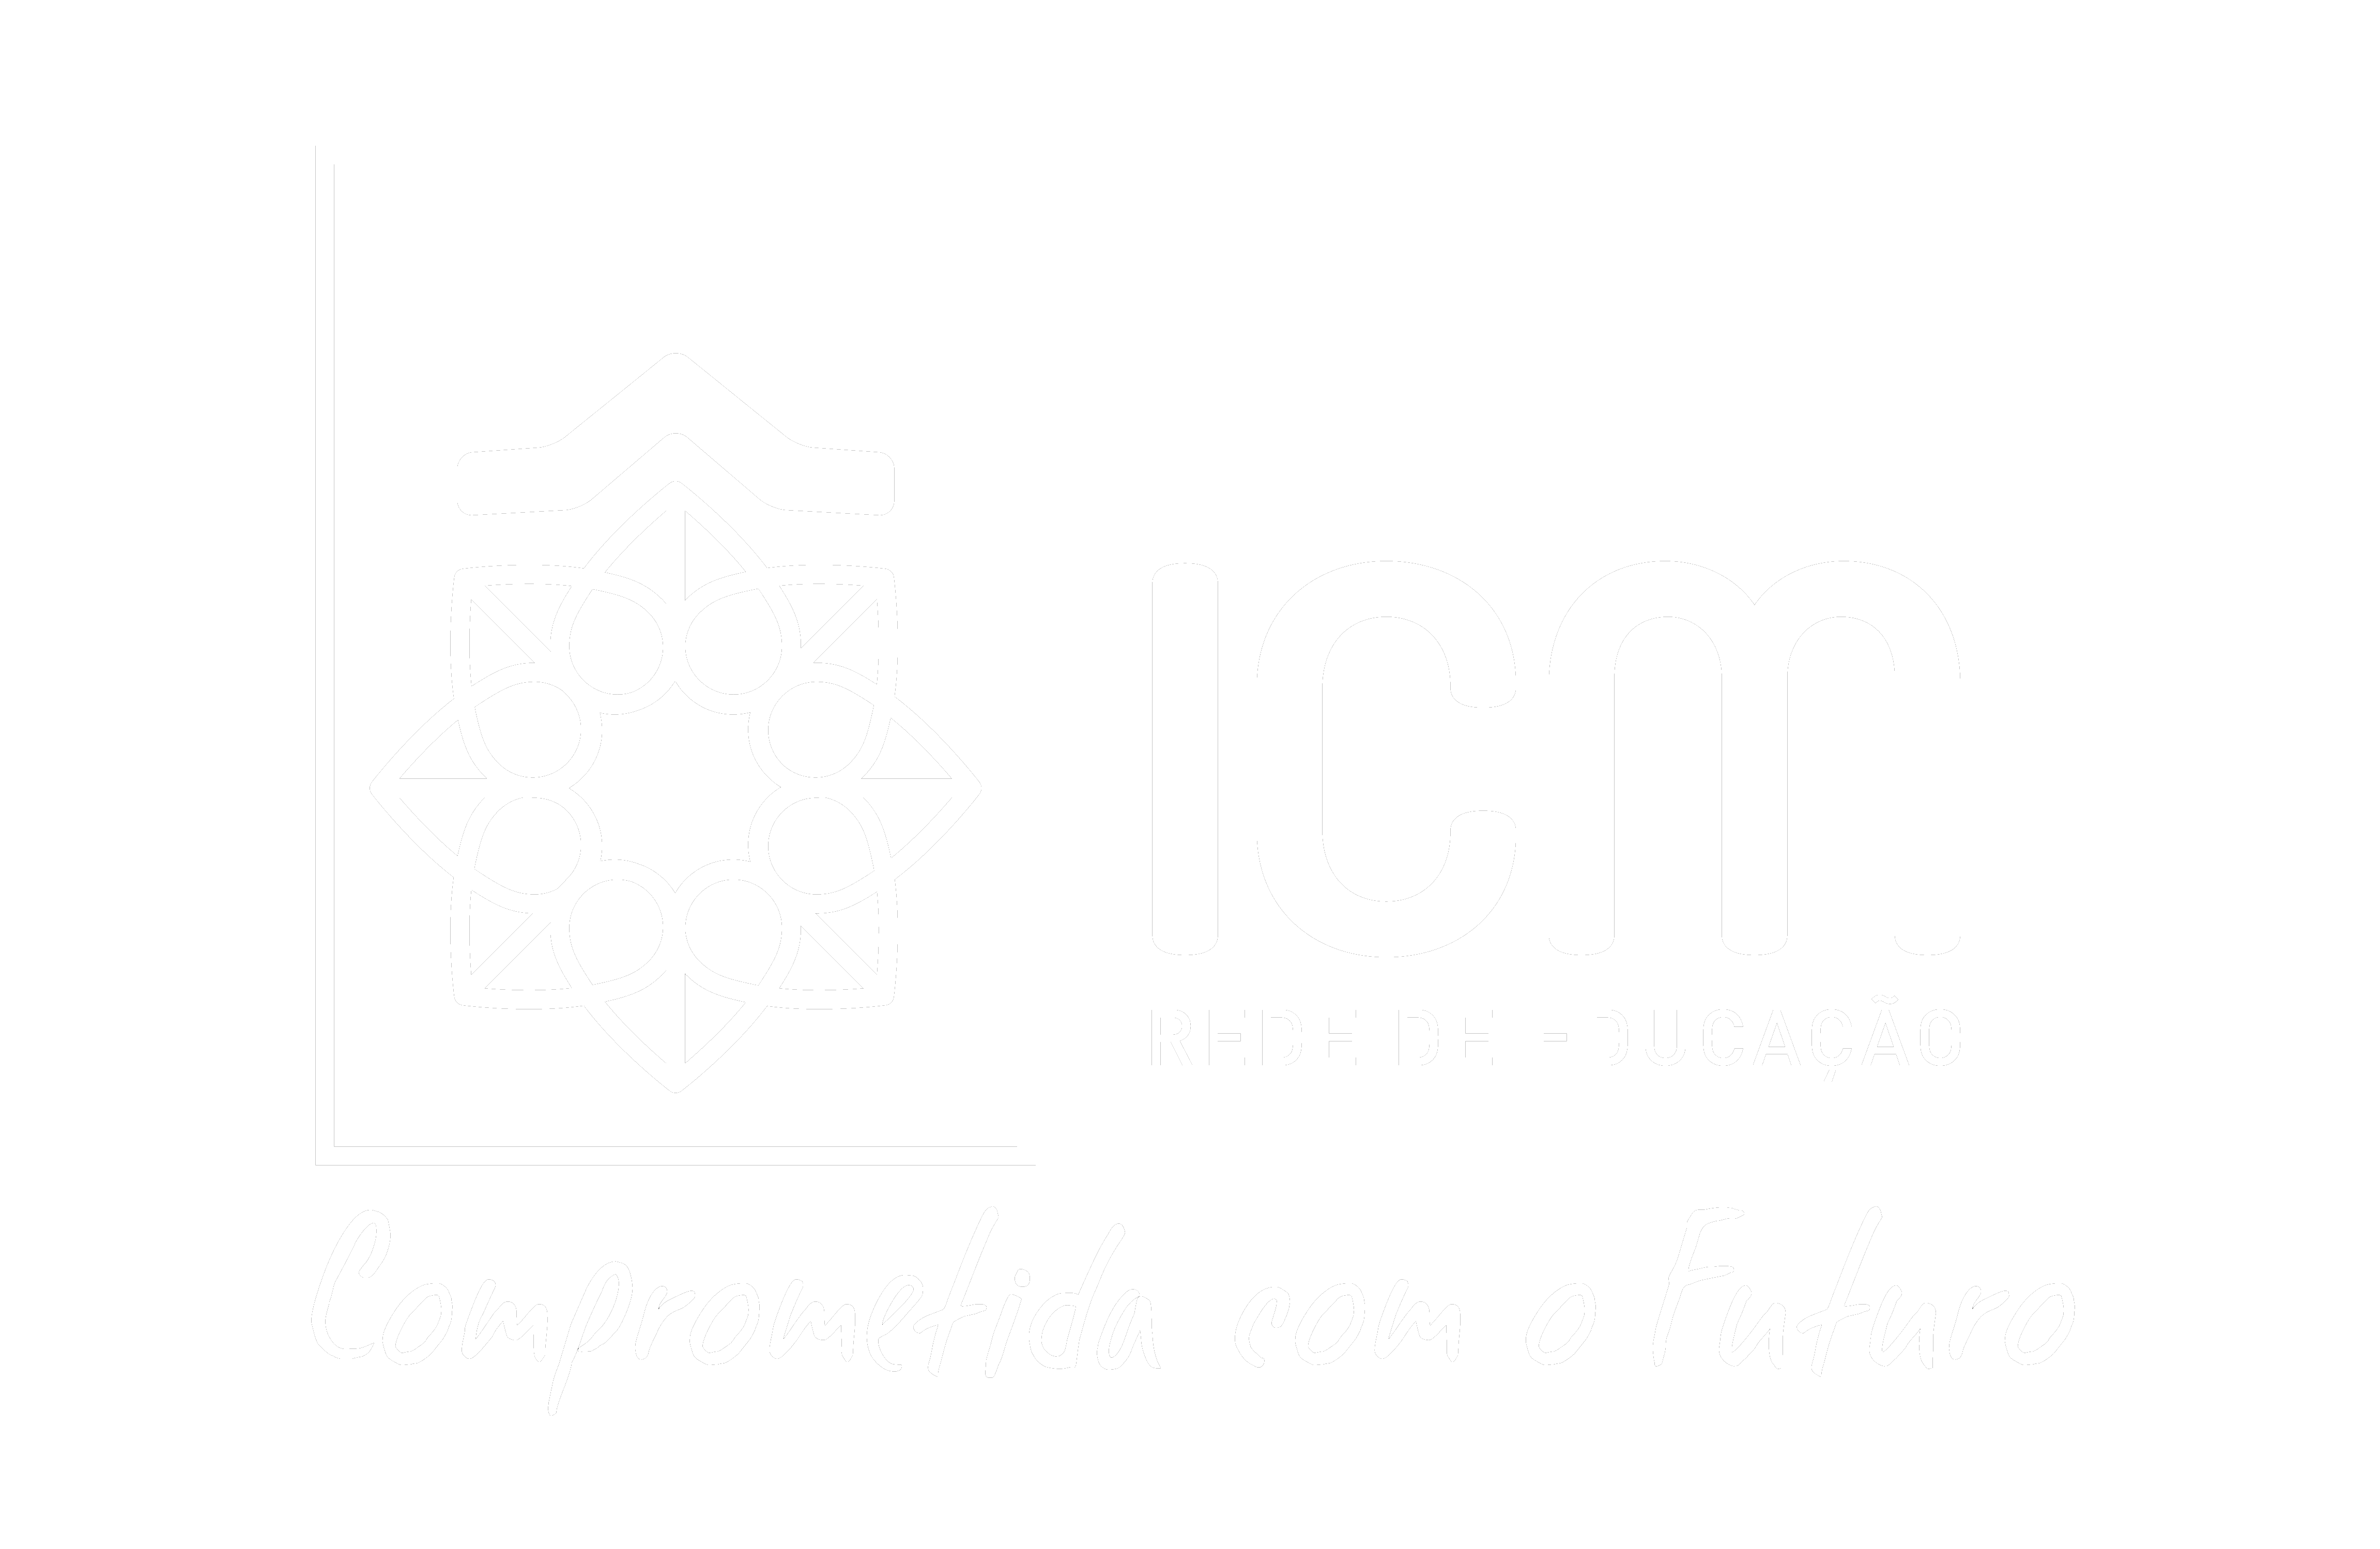 ICM_Assinaturas_Preferencial com Slogan_letras-brancas-fundo-transparente só educação